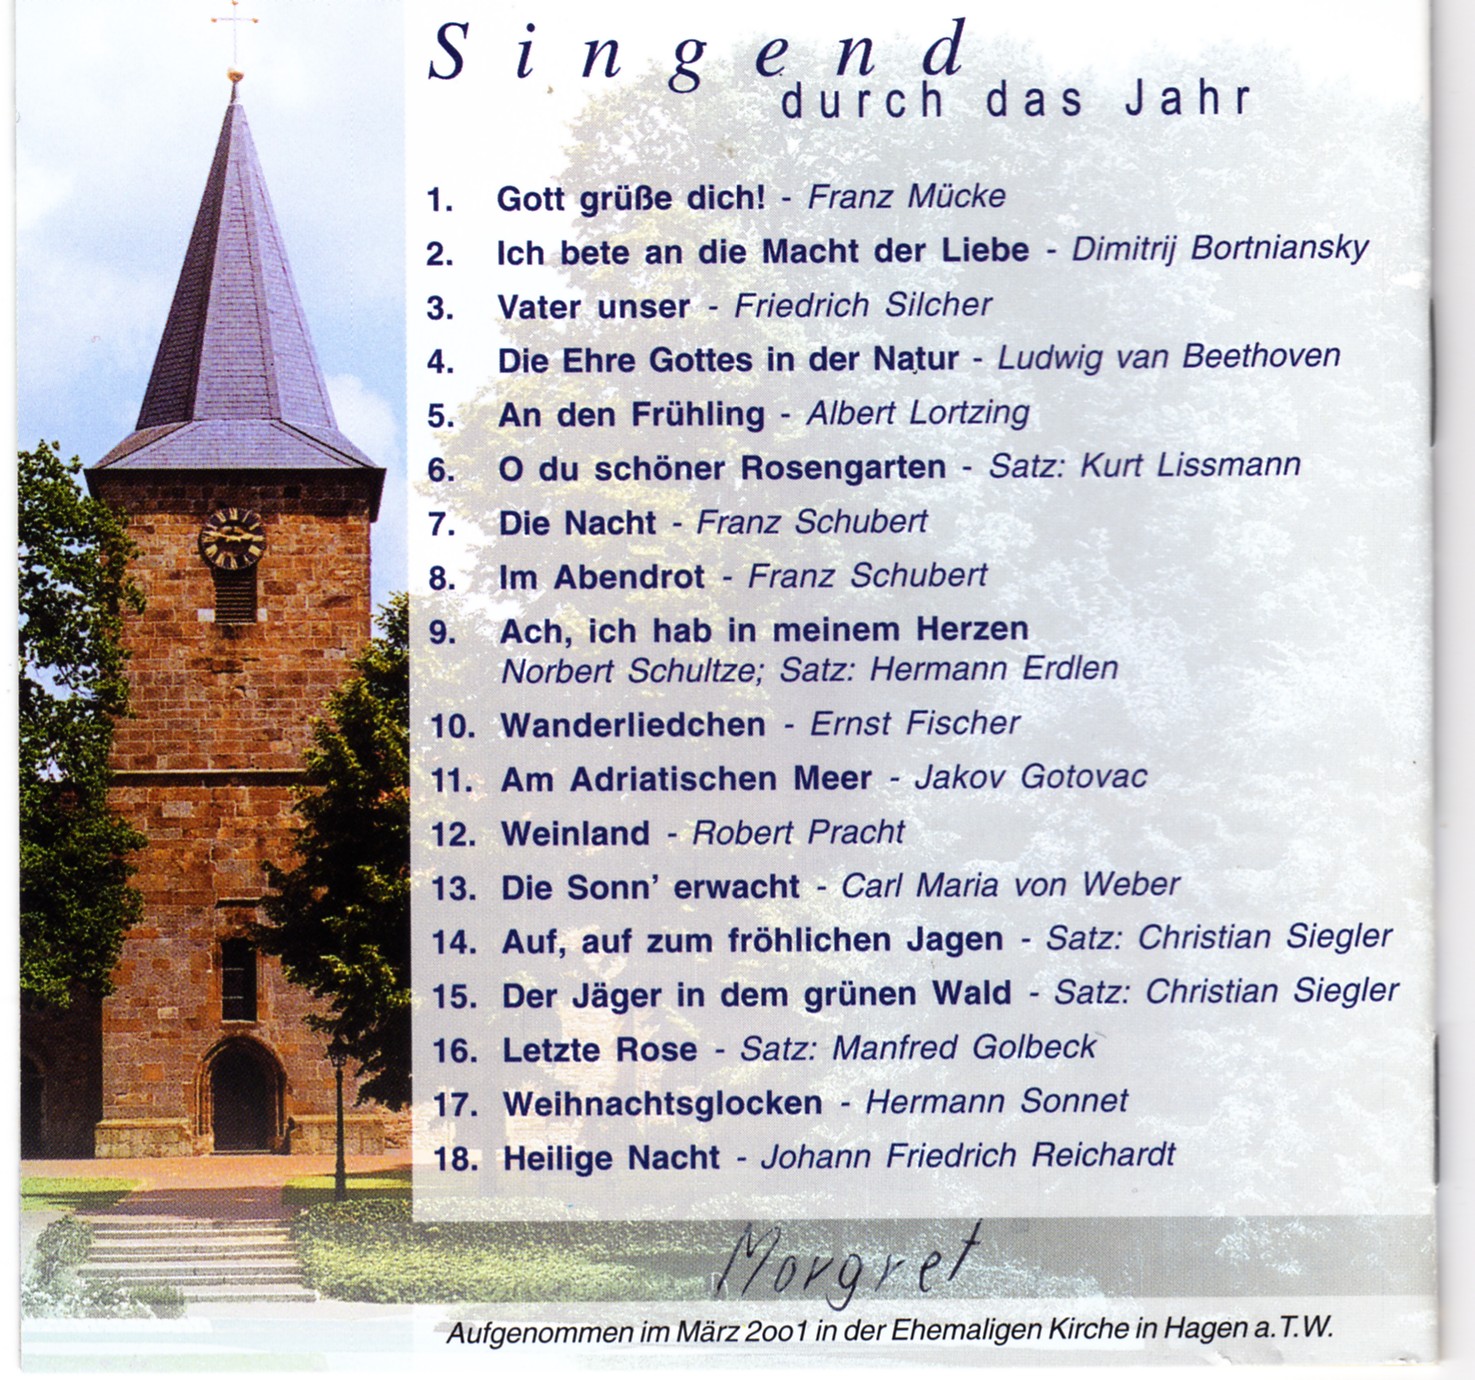 Männerchor Hagen - Singend durch das Jahr - Cover Rückseite